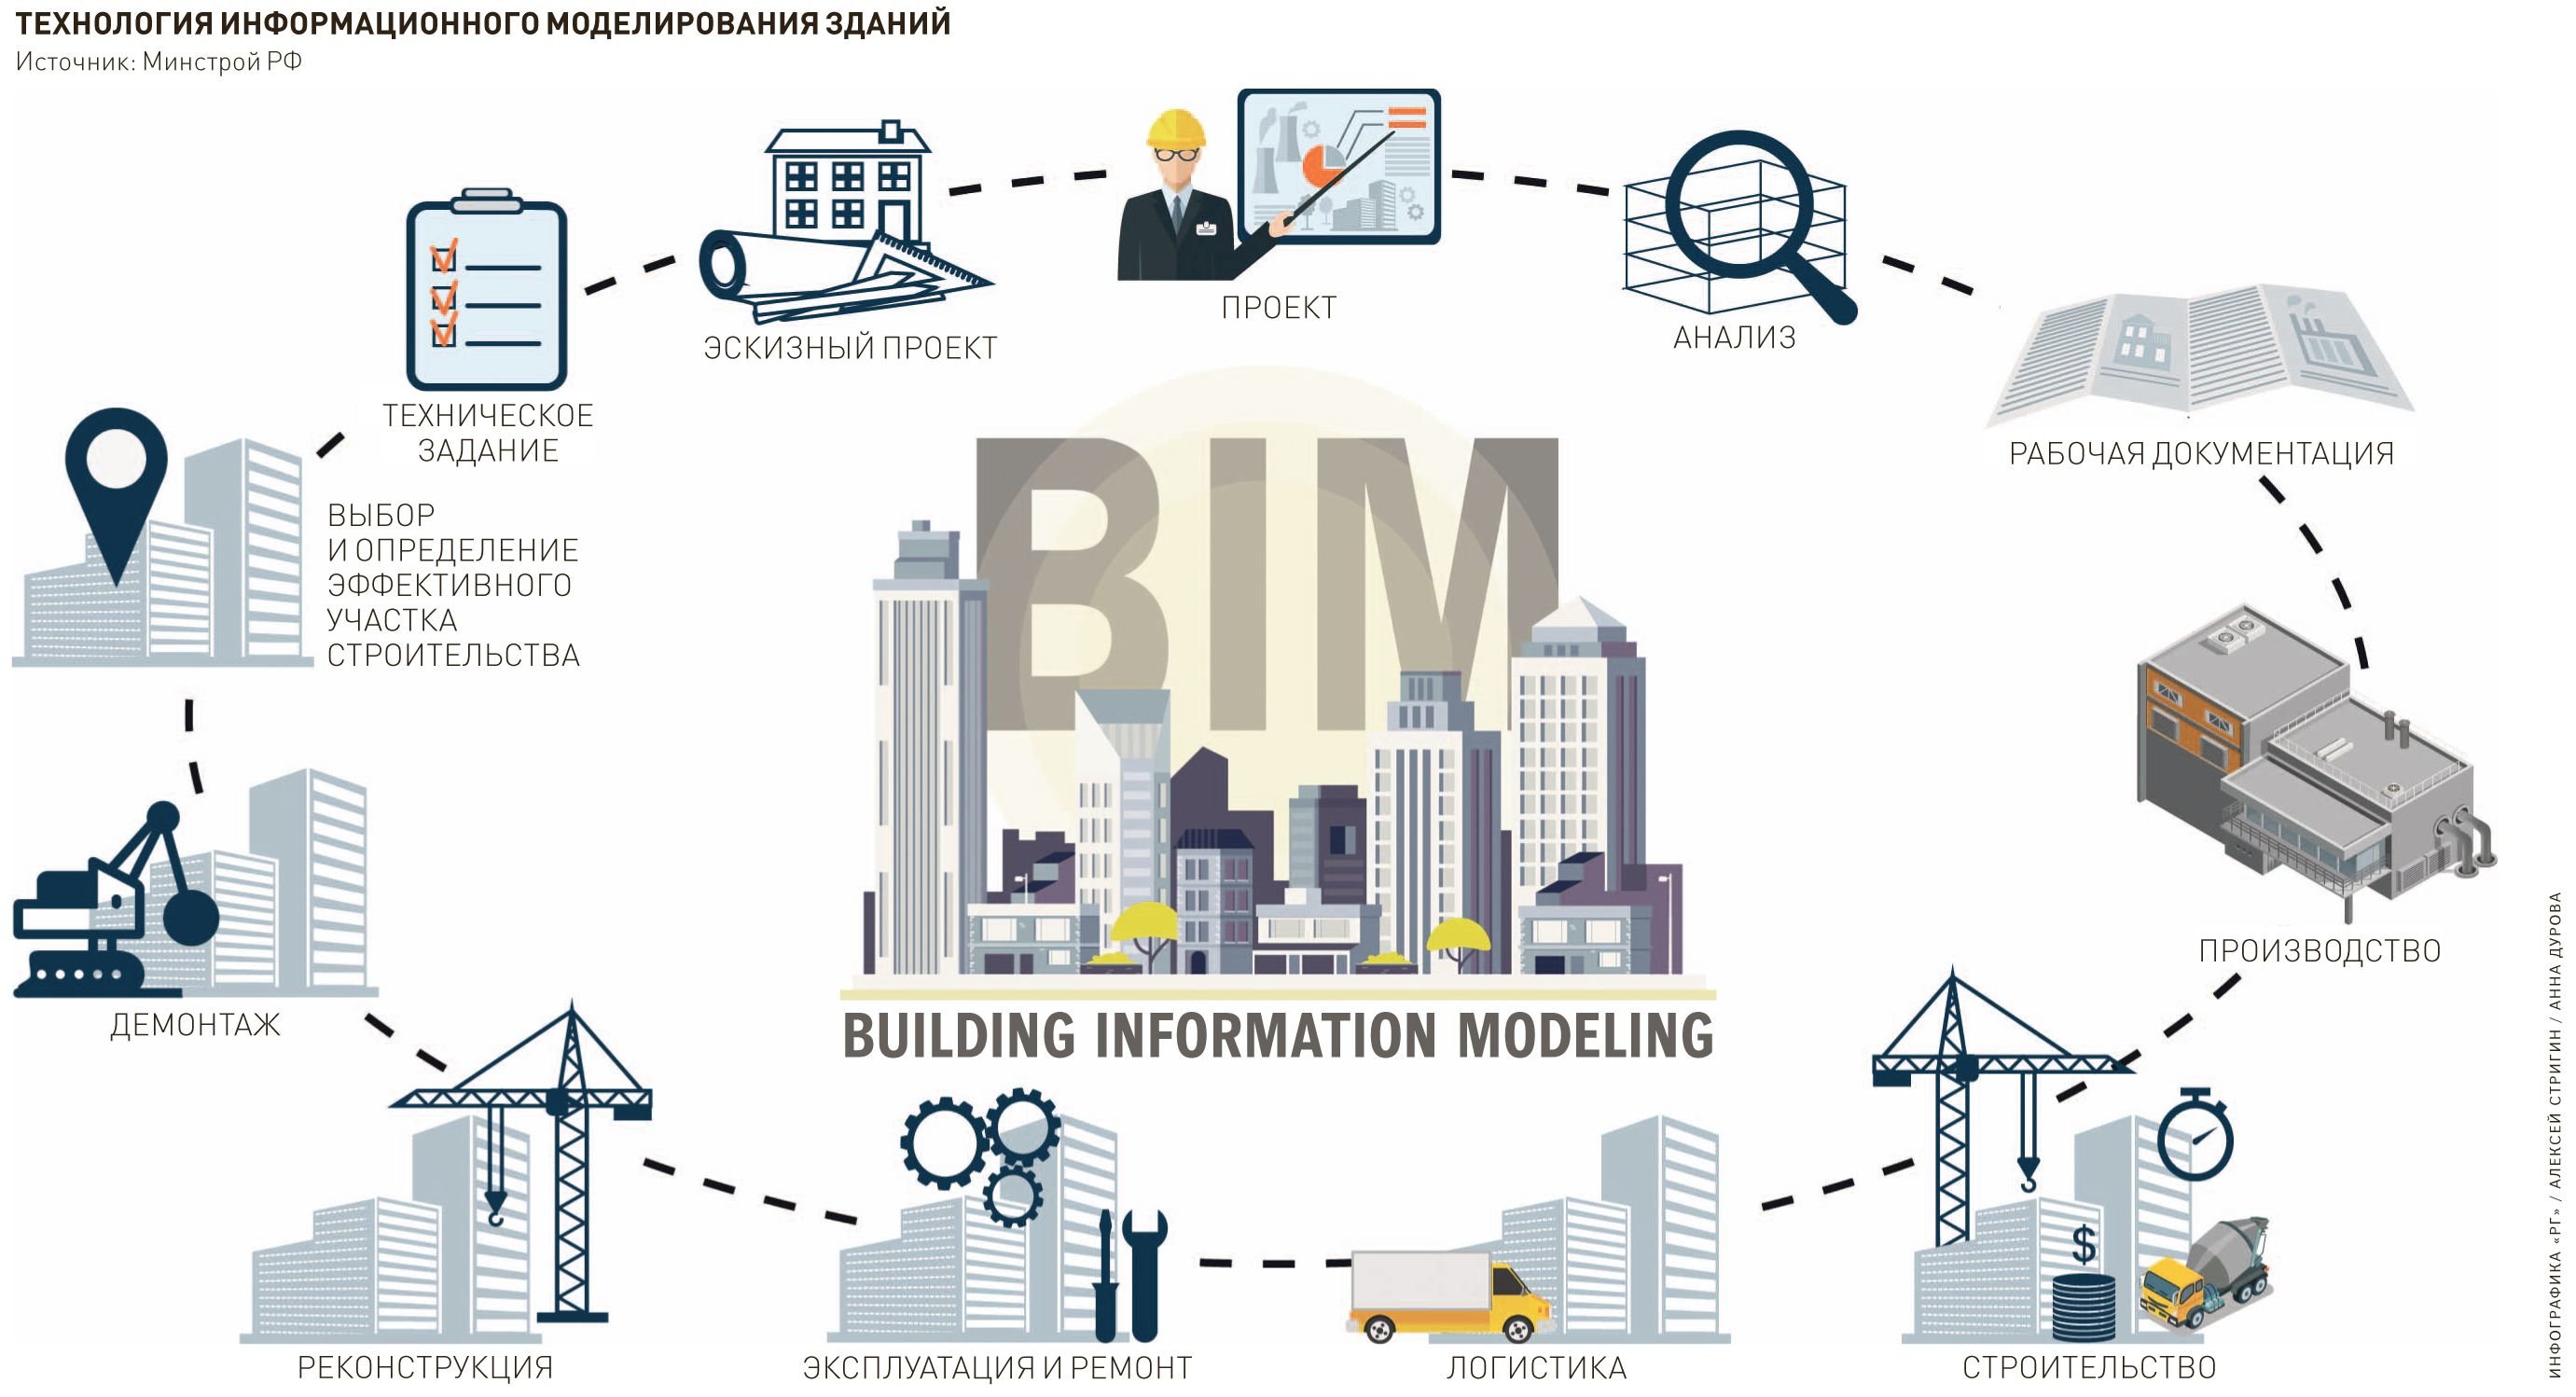 Технологическое проектирование globomarket ru. Технологии информационного моделирования BIM. Информационная модель здания BIM. Проектирование информационной BIM модели. Технология информационного моделирования (building information Modeling, BIM).